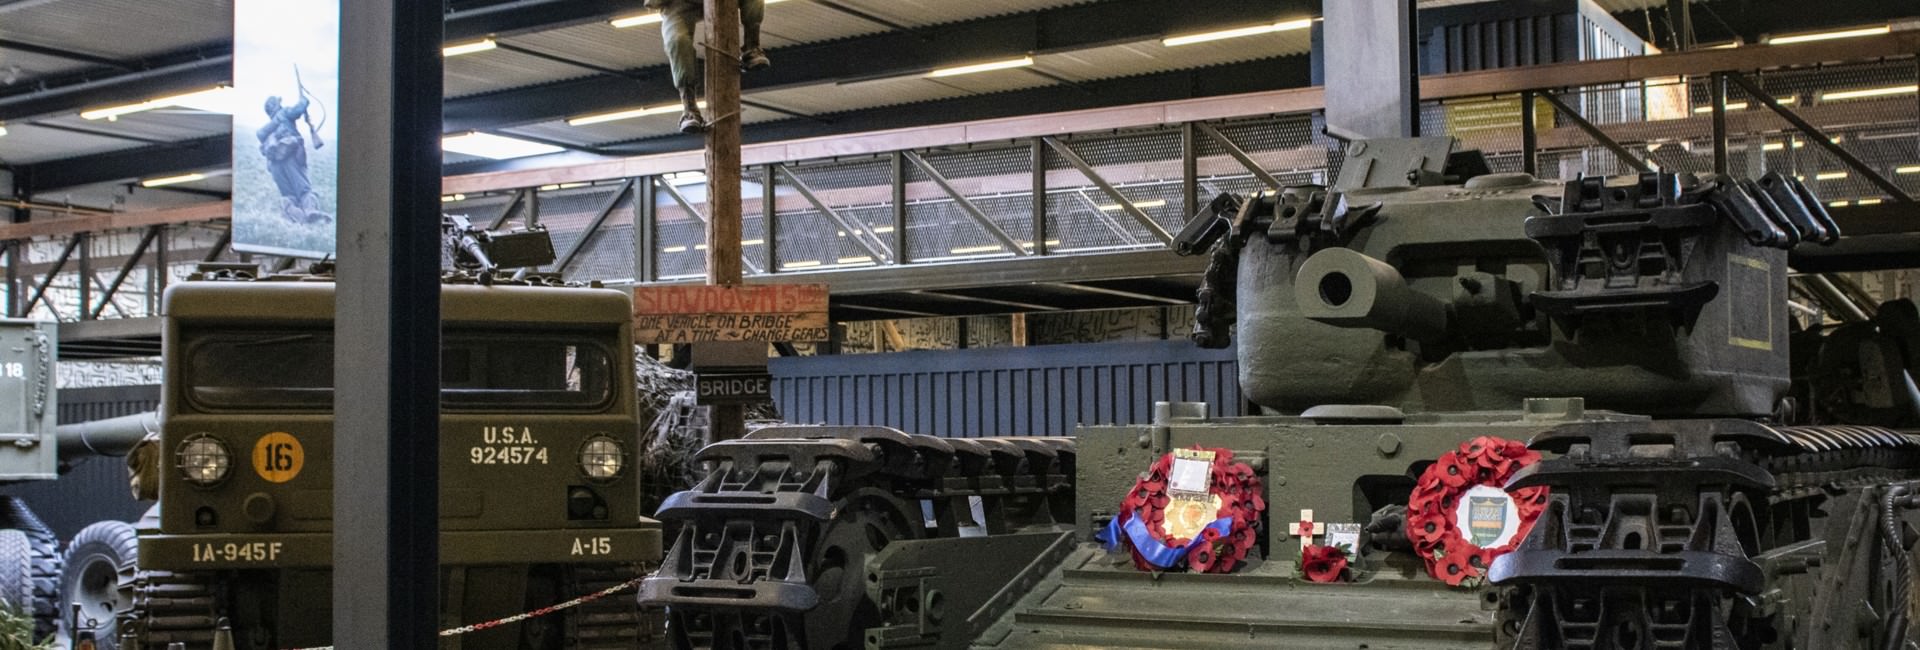 oorlogsmuseum - De slag bij Overloon